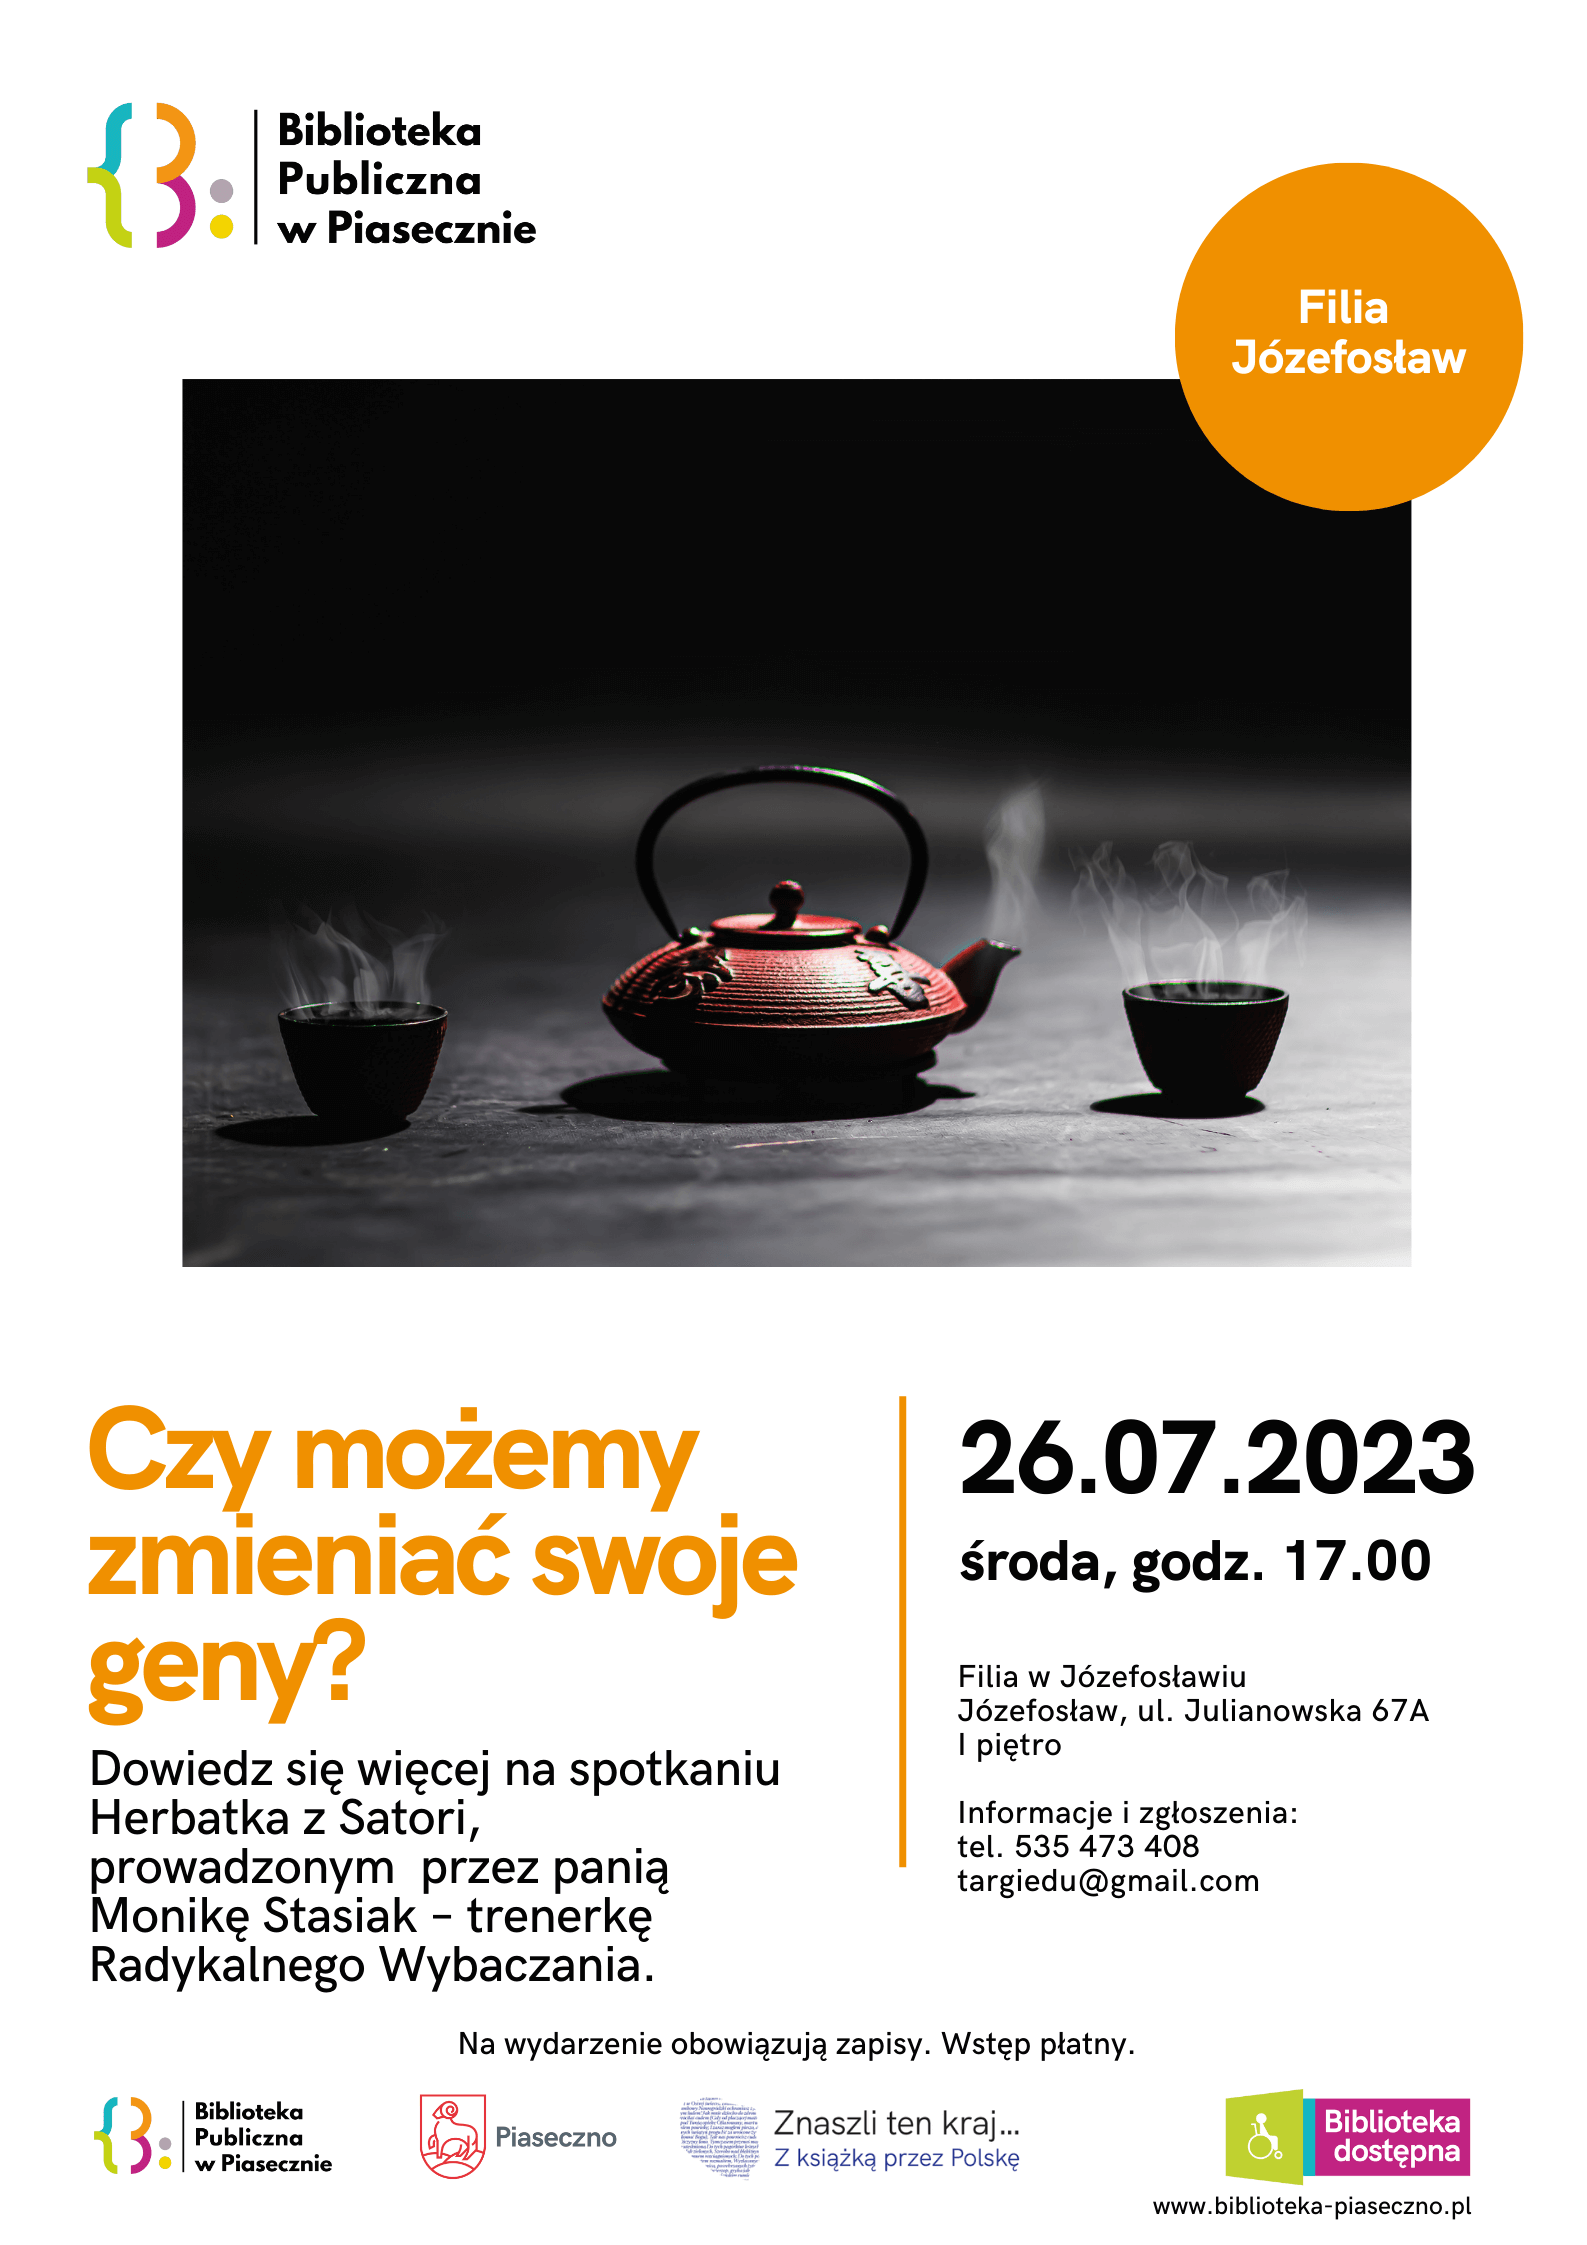 Herbatka Z Satori – plakat informacyjny